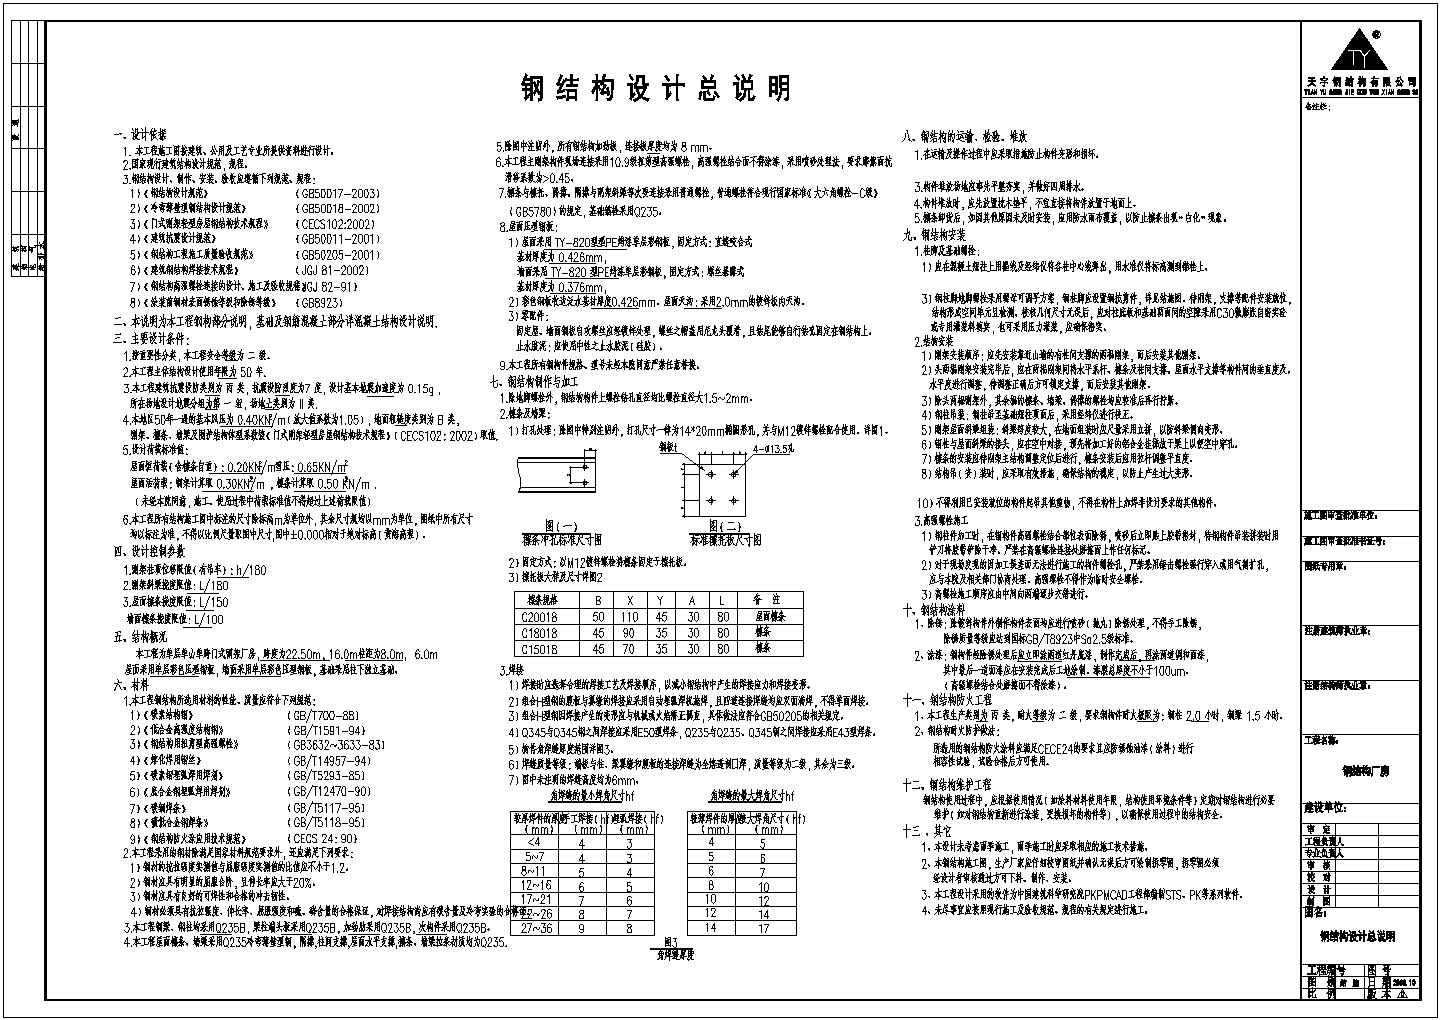 南京某公司钢结构工程CADD设计图纸